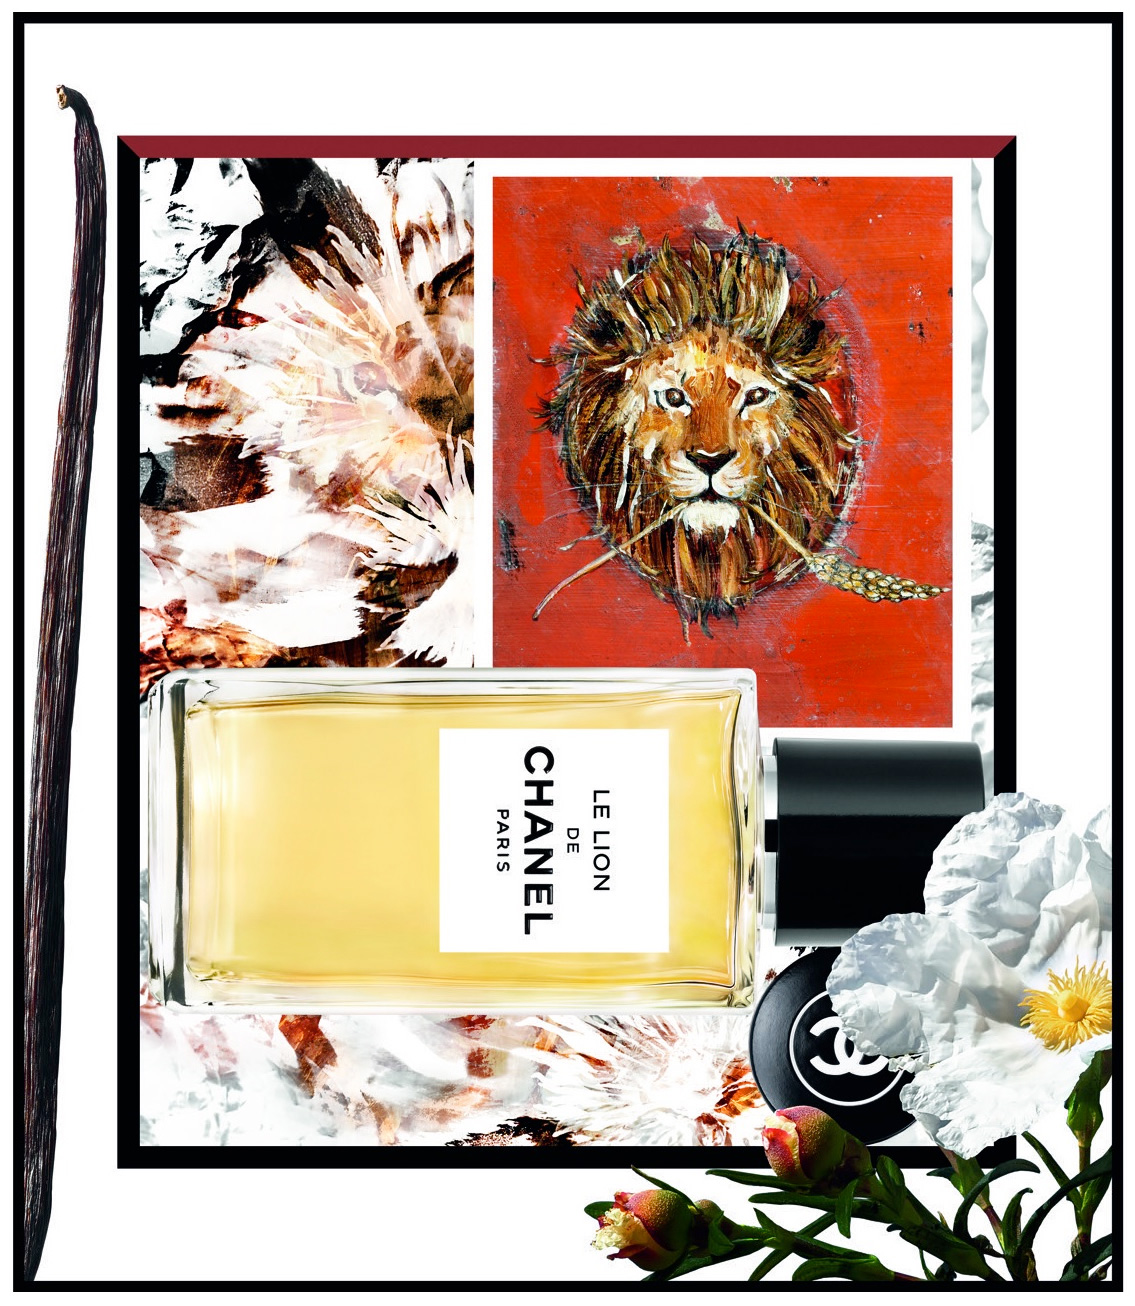 Le Lion de Chanel: Coco Chanel's Lion ~ Fragrance Reviews